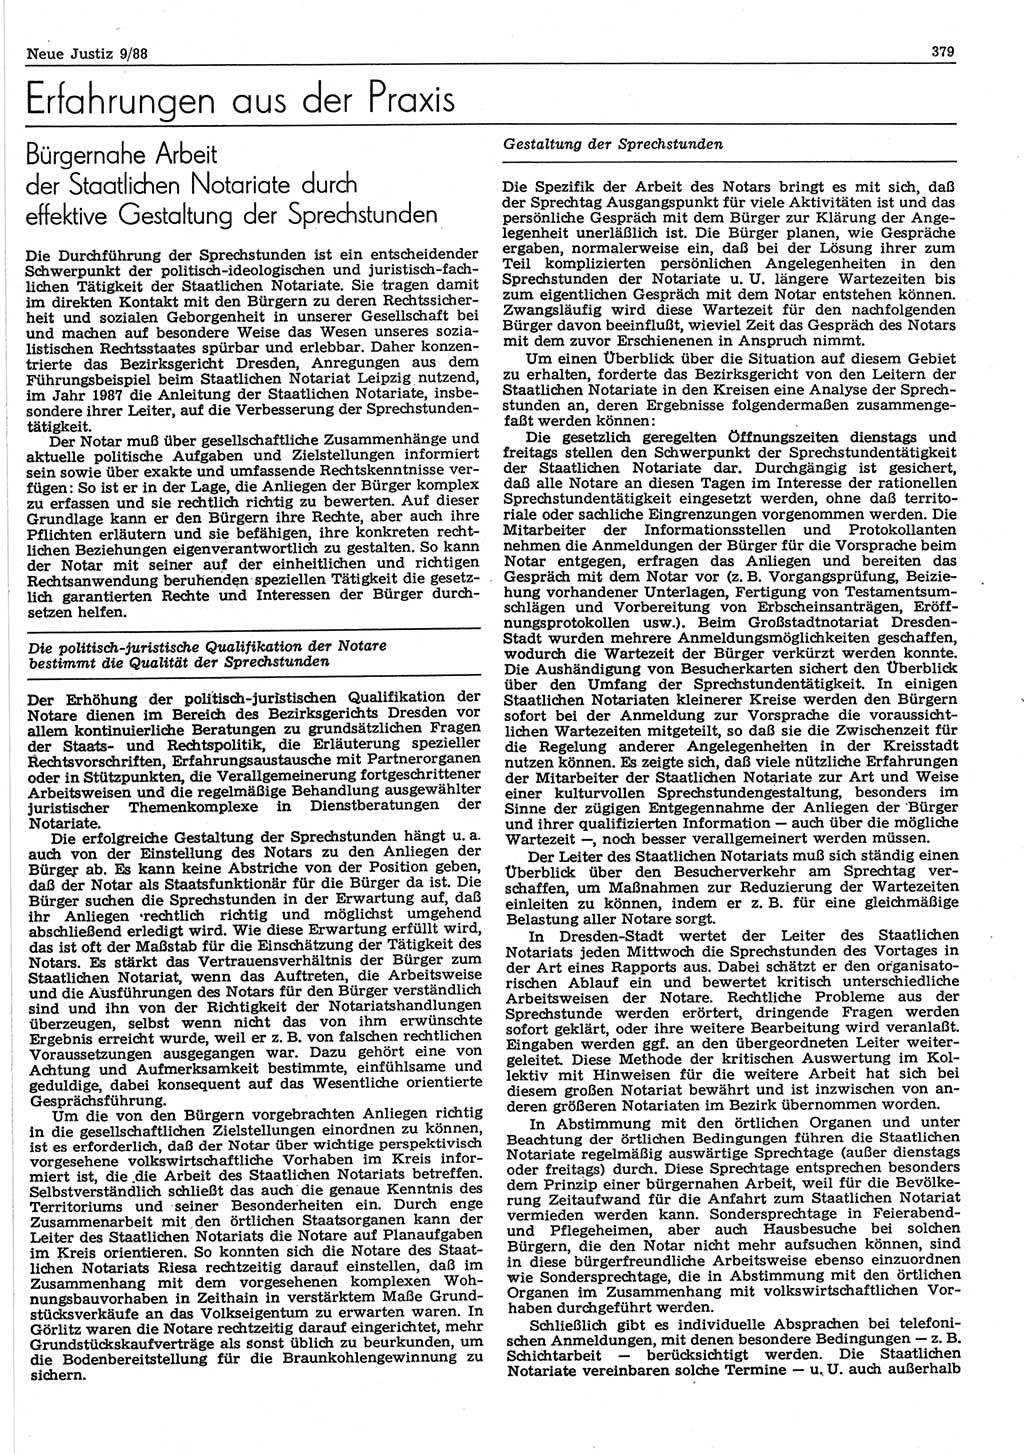 Neue Justiz (NJ), Zeitschrift für sozialistisches Recht und Gesetzlichkeit [Deutsche Demokratische Republik (DDR)], 42. Jahrgang 1988, Seite 379 (NJ DDR 1988, S. 379)